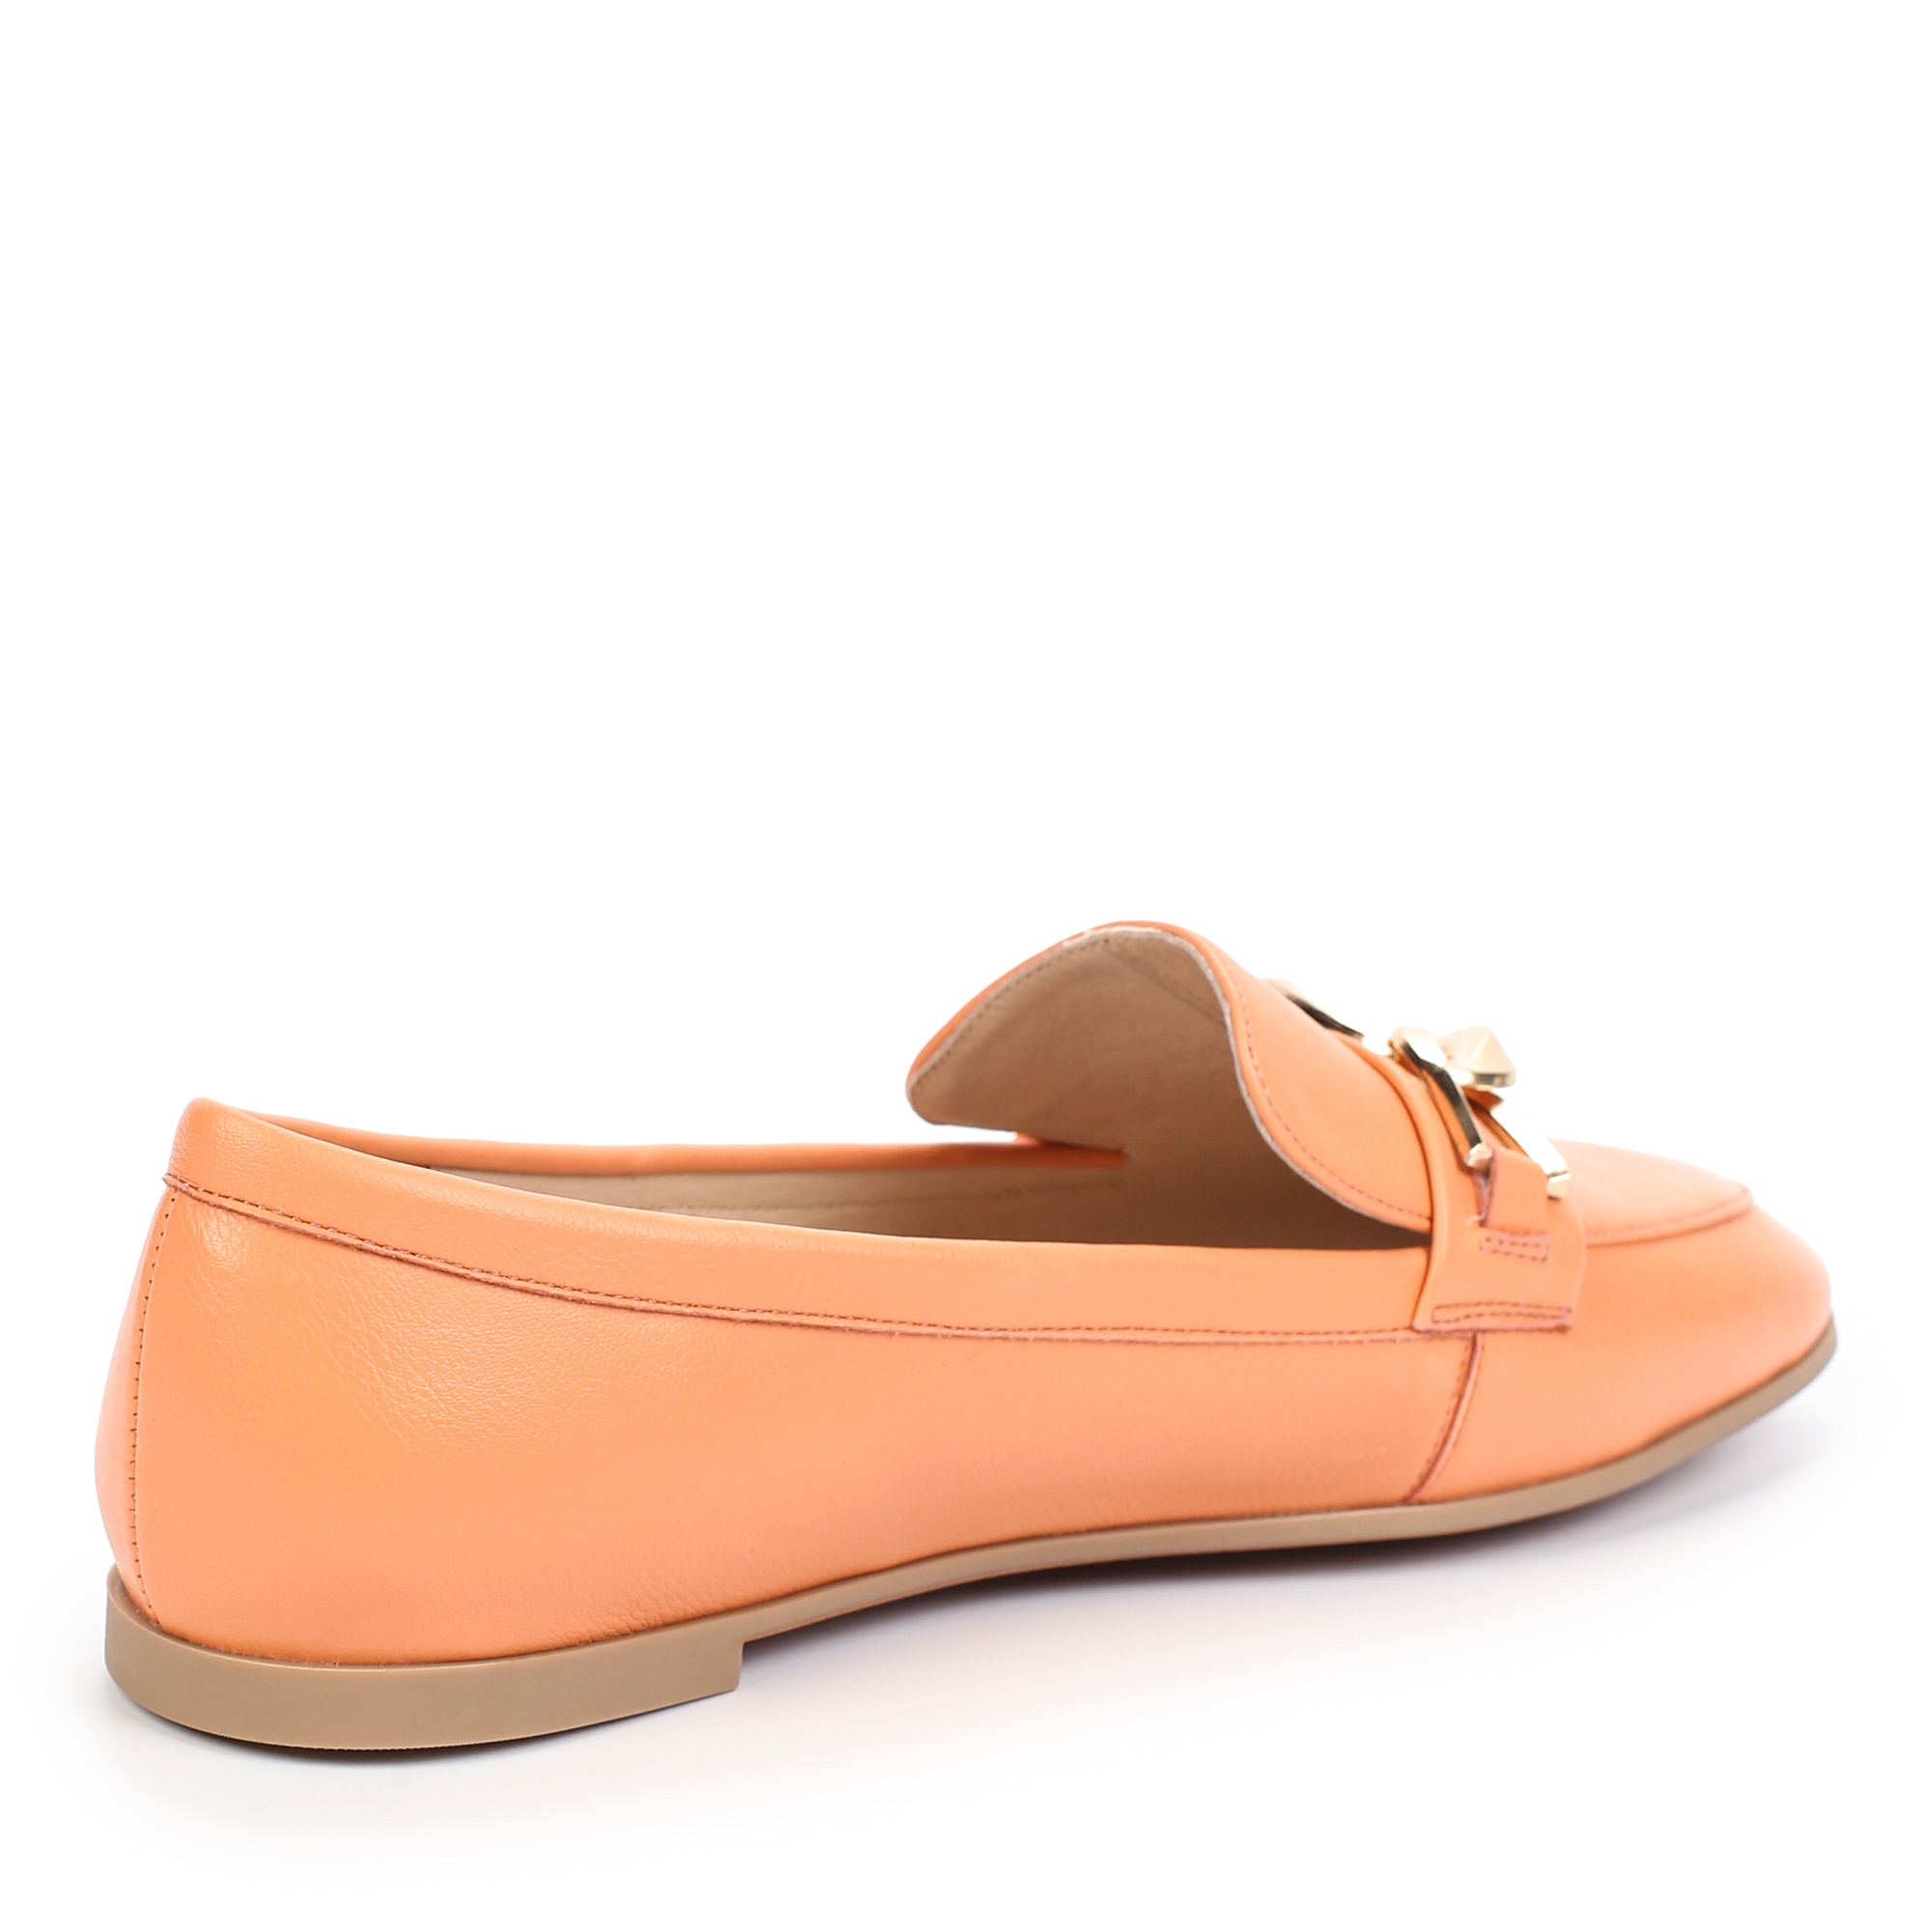 Туфли Thomas Munz 094-147A-1613, цвет оранжевый, размер 37 - фото 3